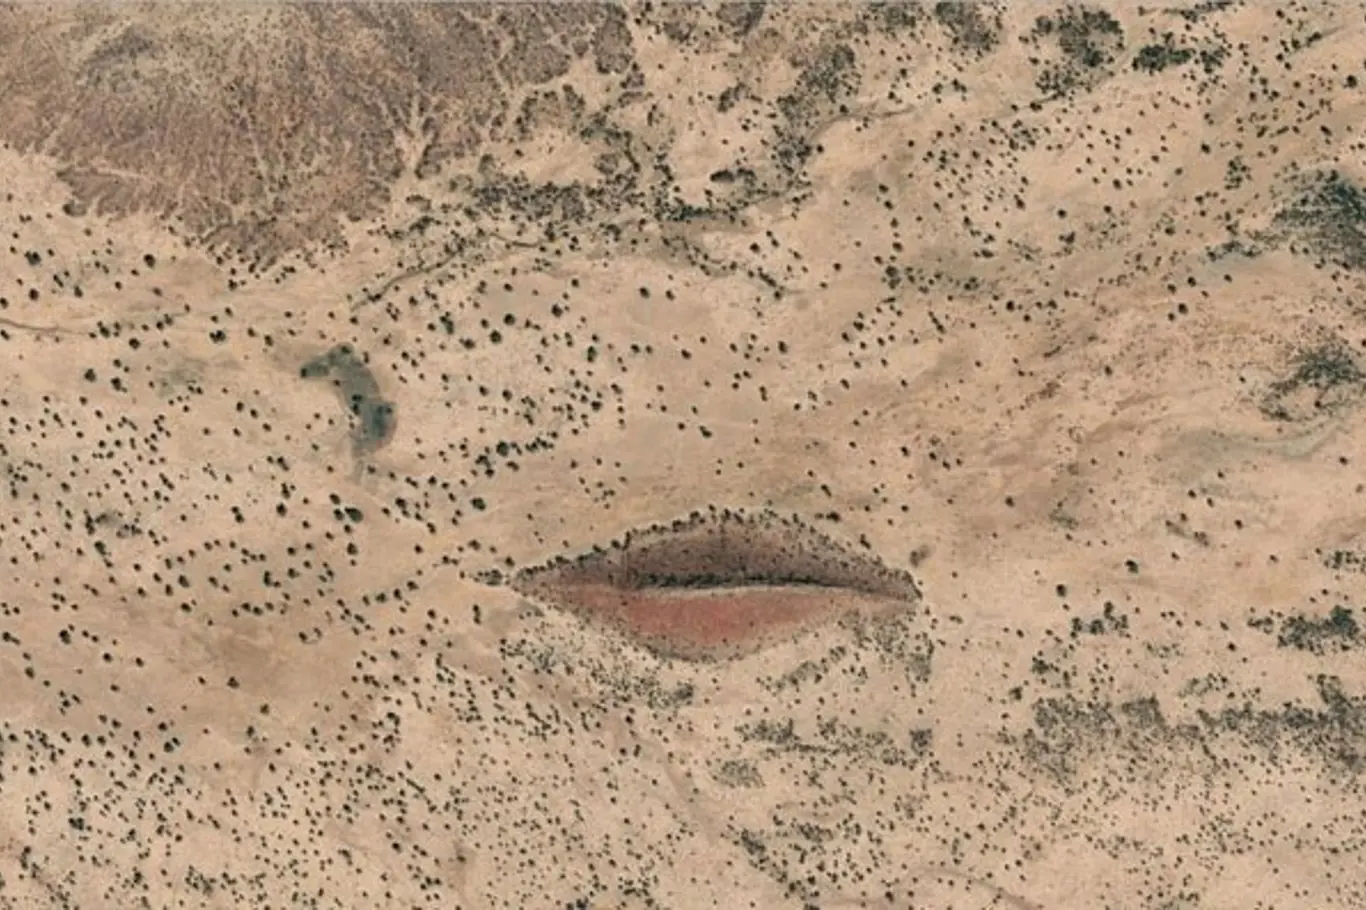 Google zachytil v súdánské poušti obří rudé rty